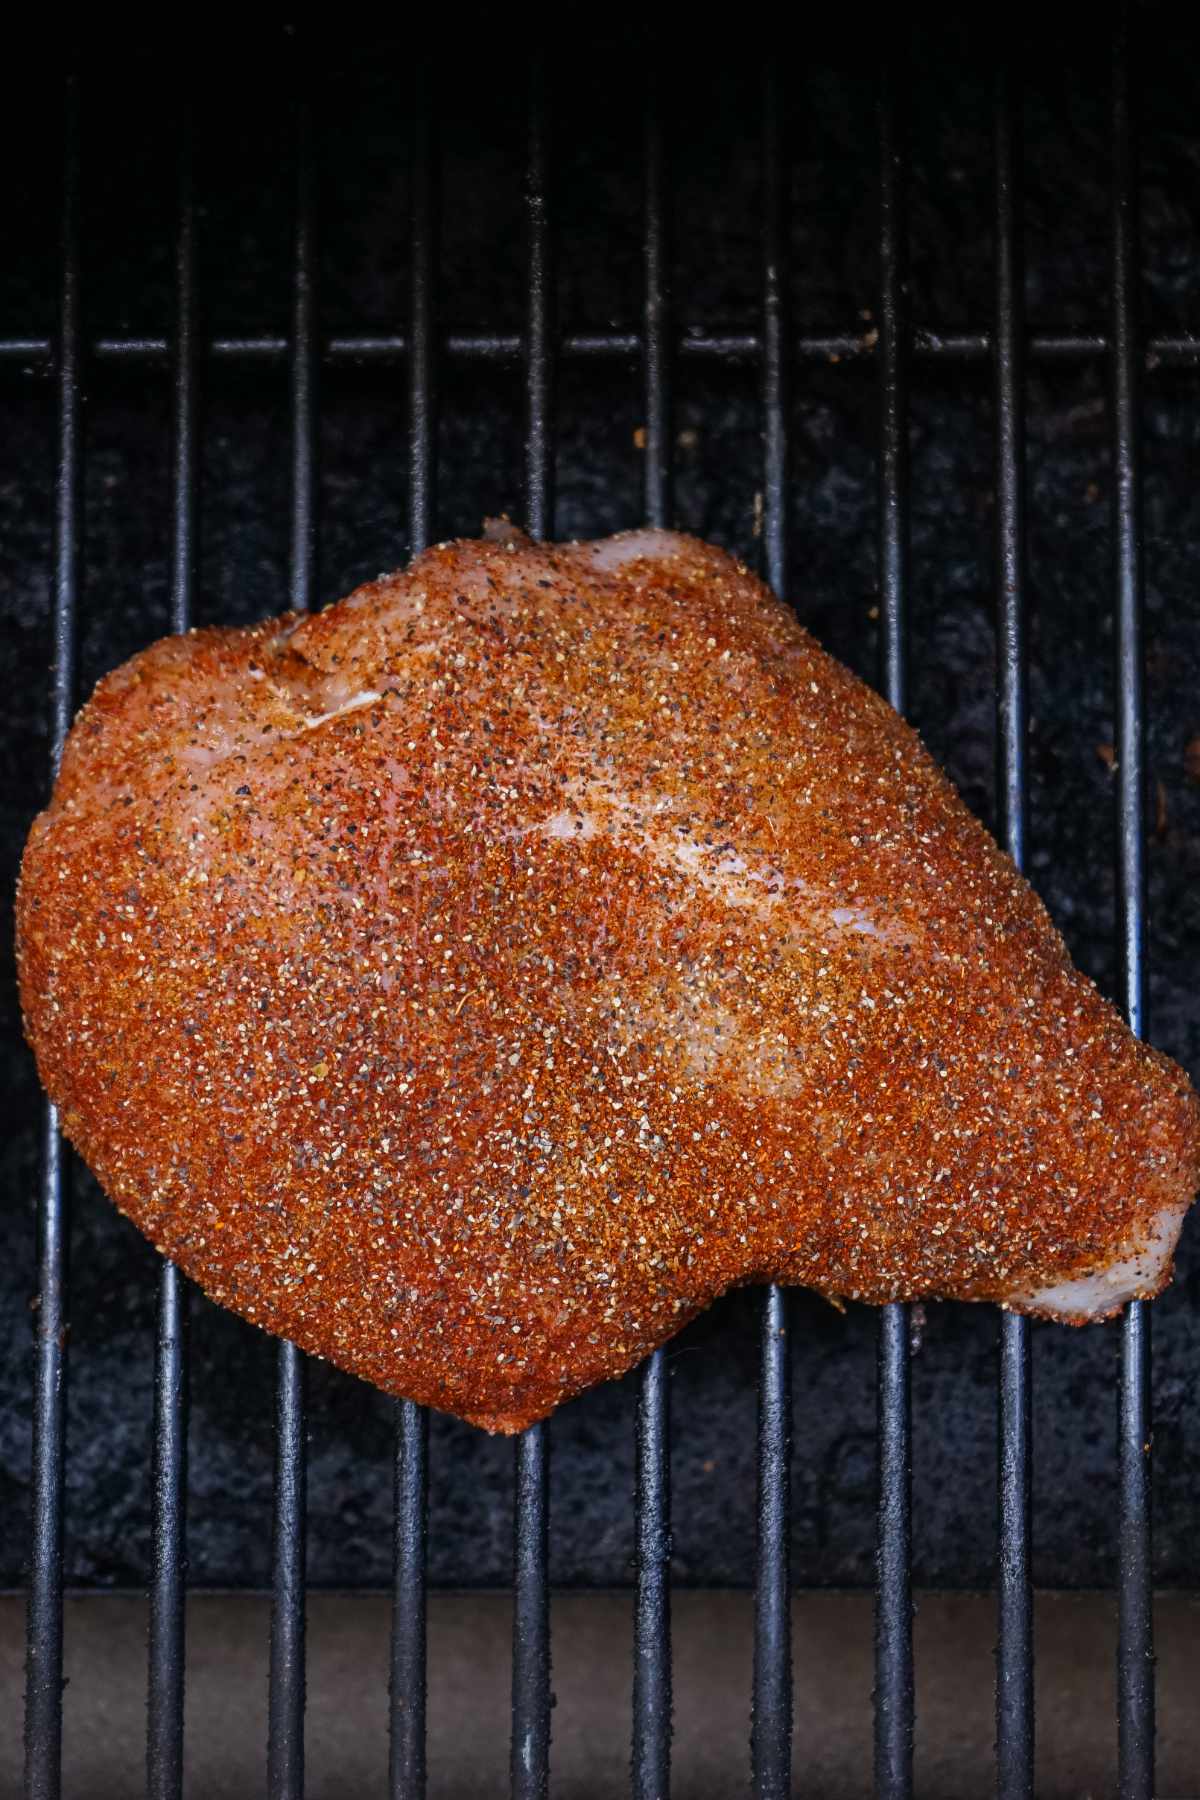 seasoned boneless turkey breast on a smoker grill.